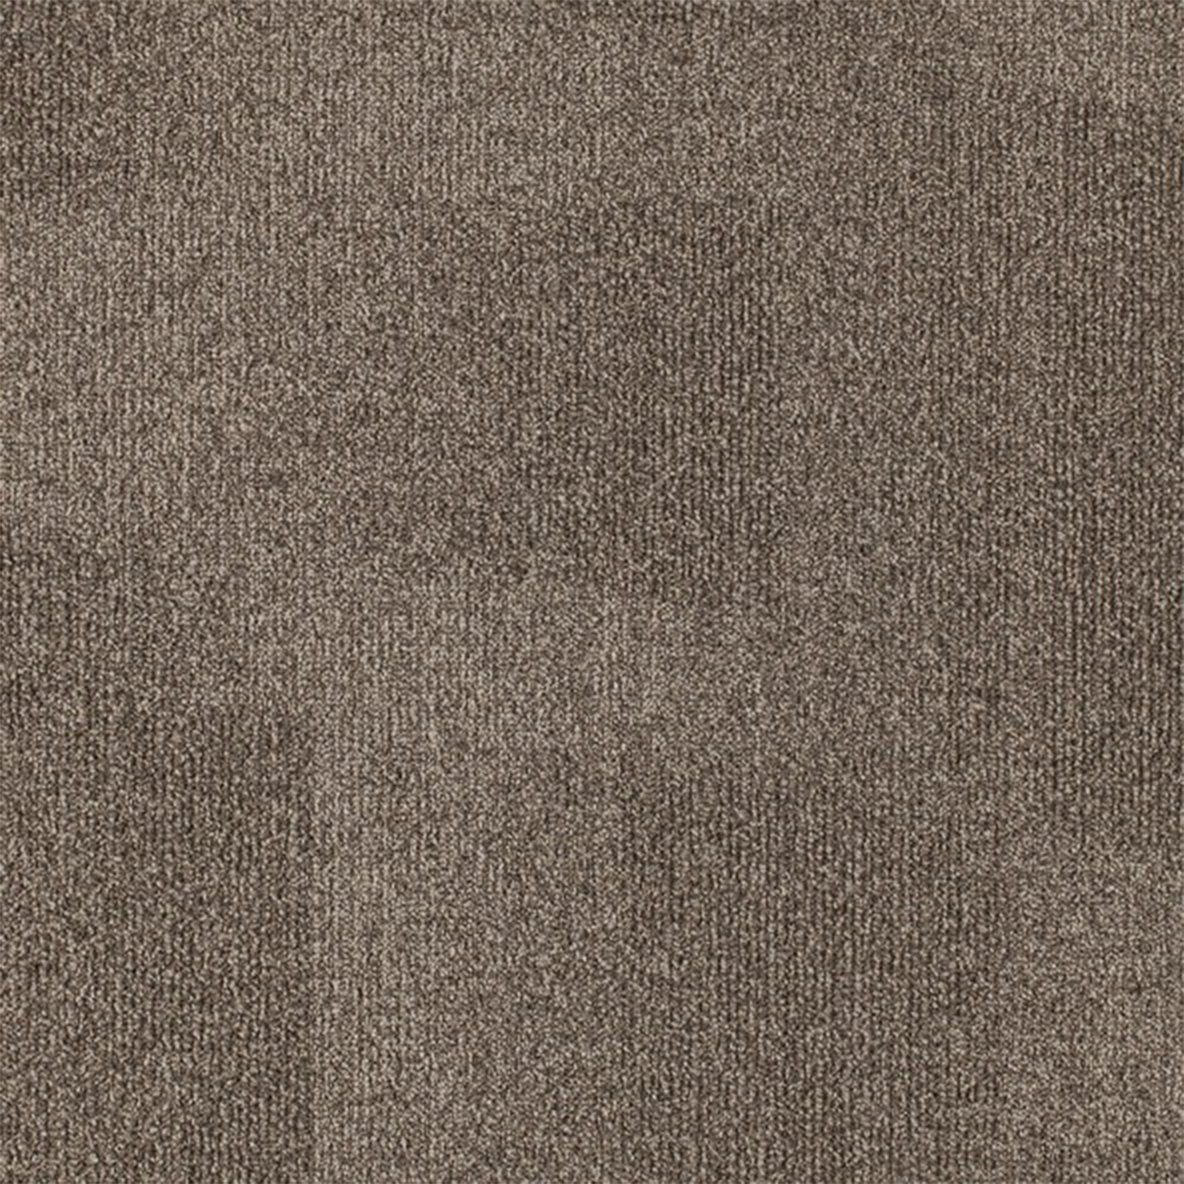 Replicate Commercial Carpet Tile .31 Inch x 50x50 cm per Tile Suede color close up